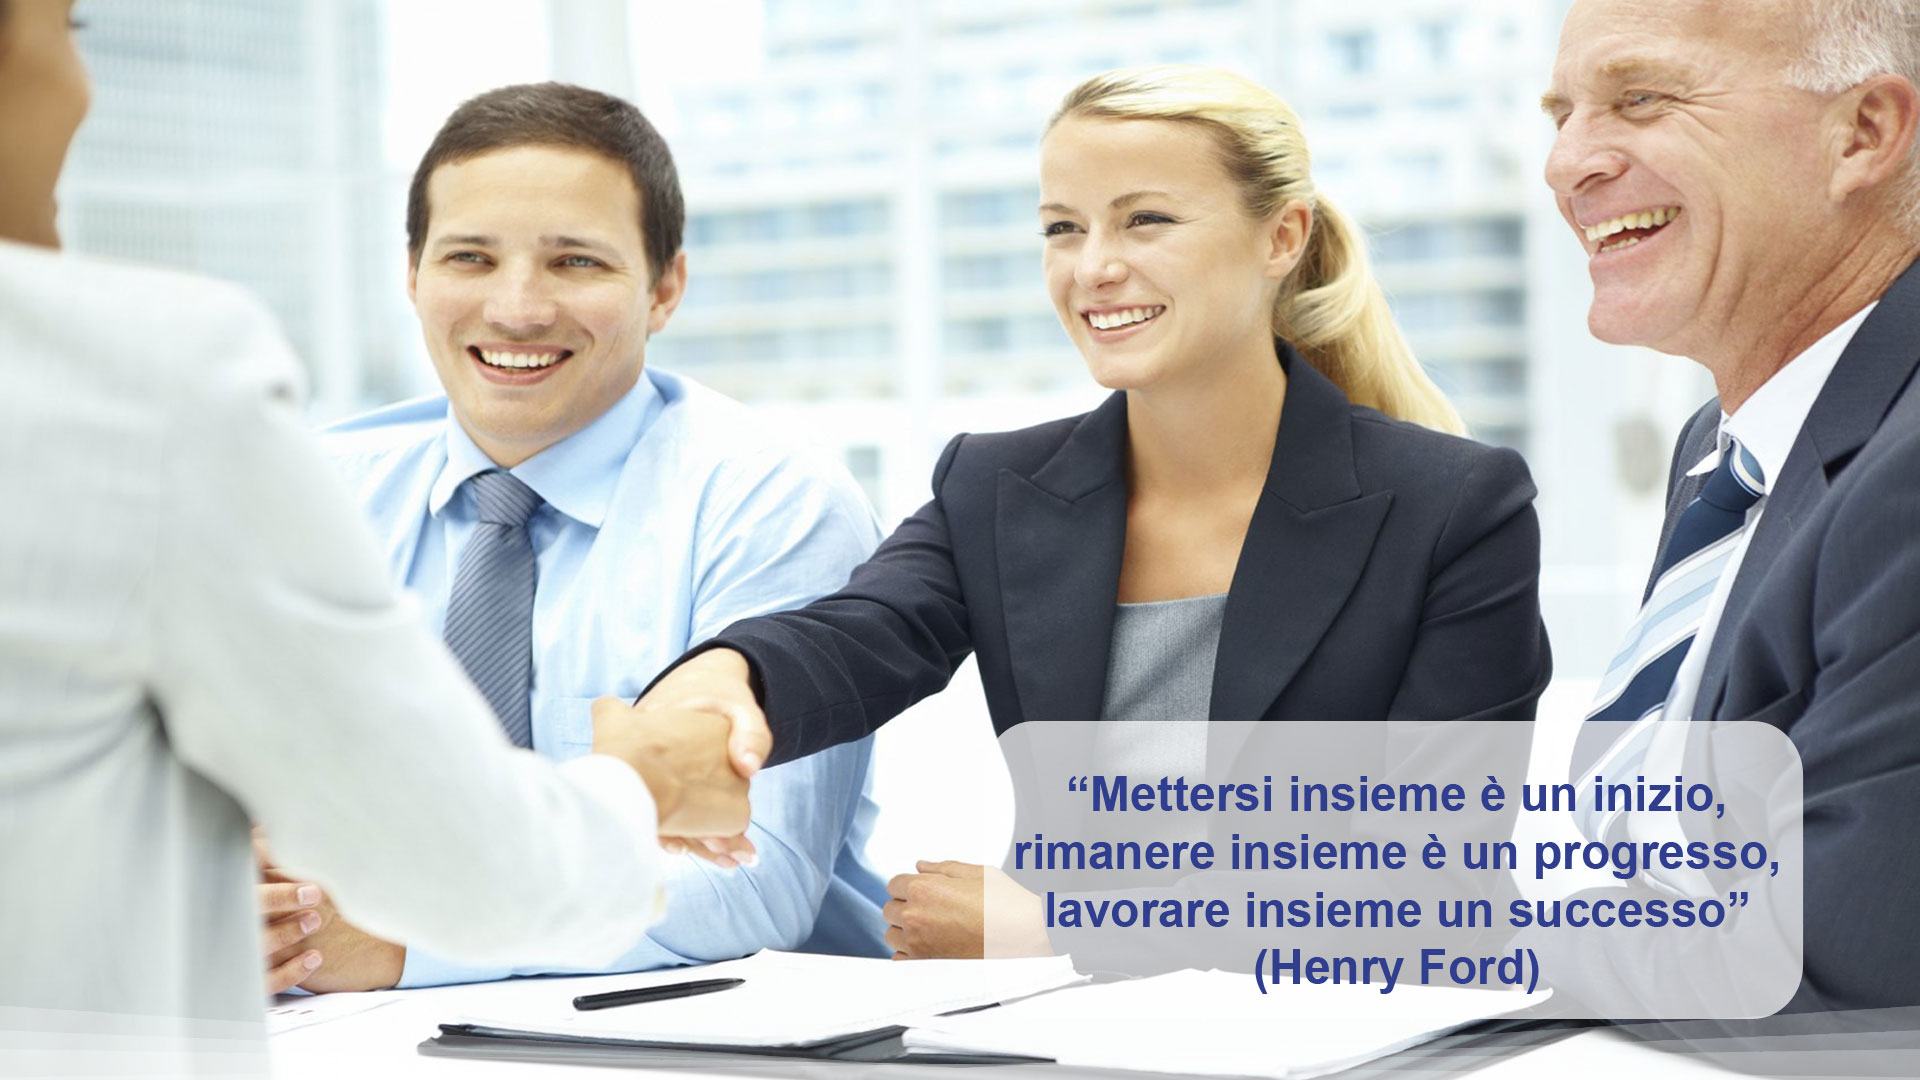 Risorse umane: “Mettersi insieme è un inizio, rimanere insieme è un progresso, lavorare insieme un successo” (Henry Ford)